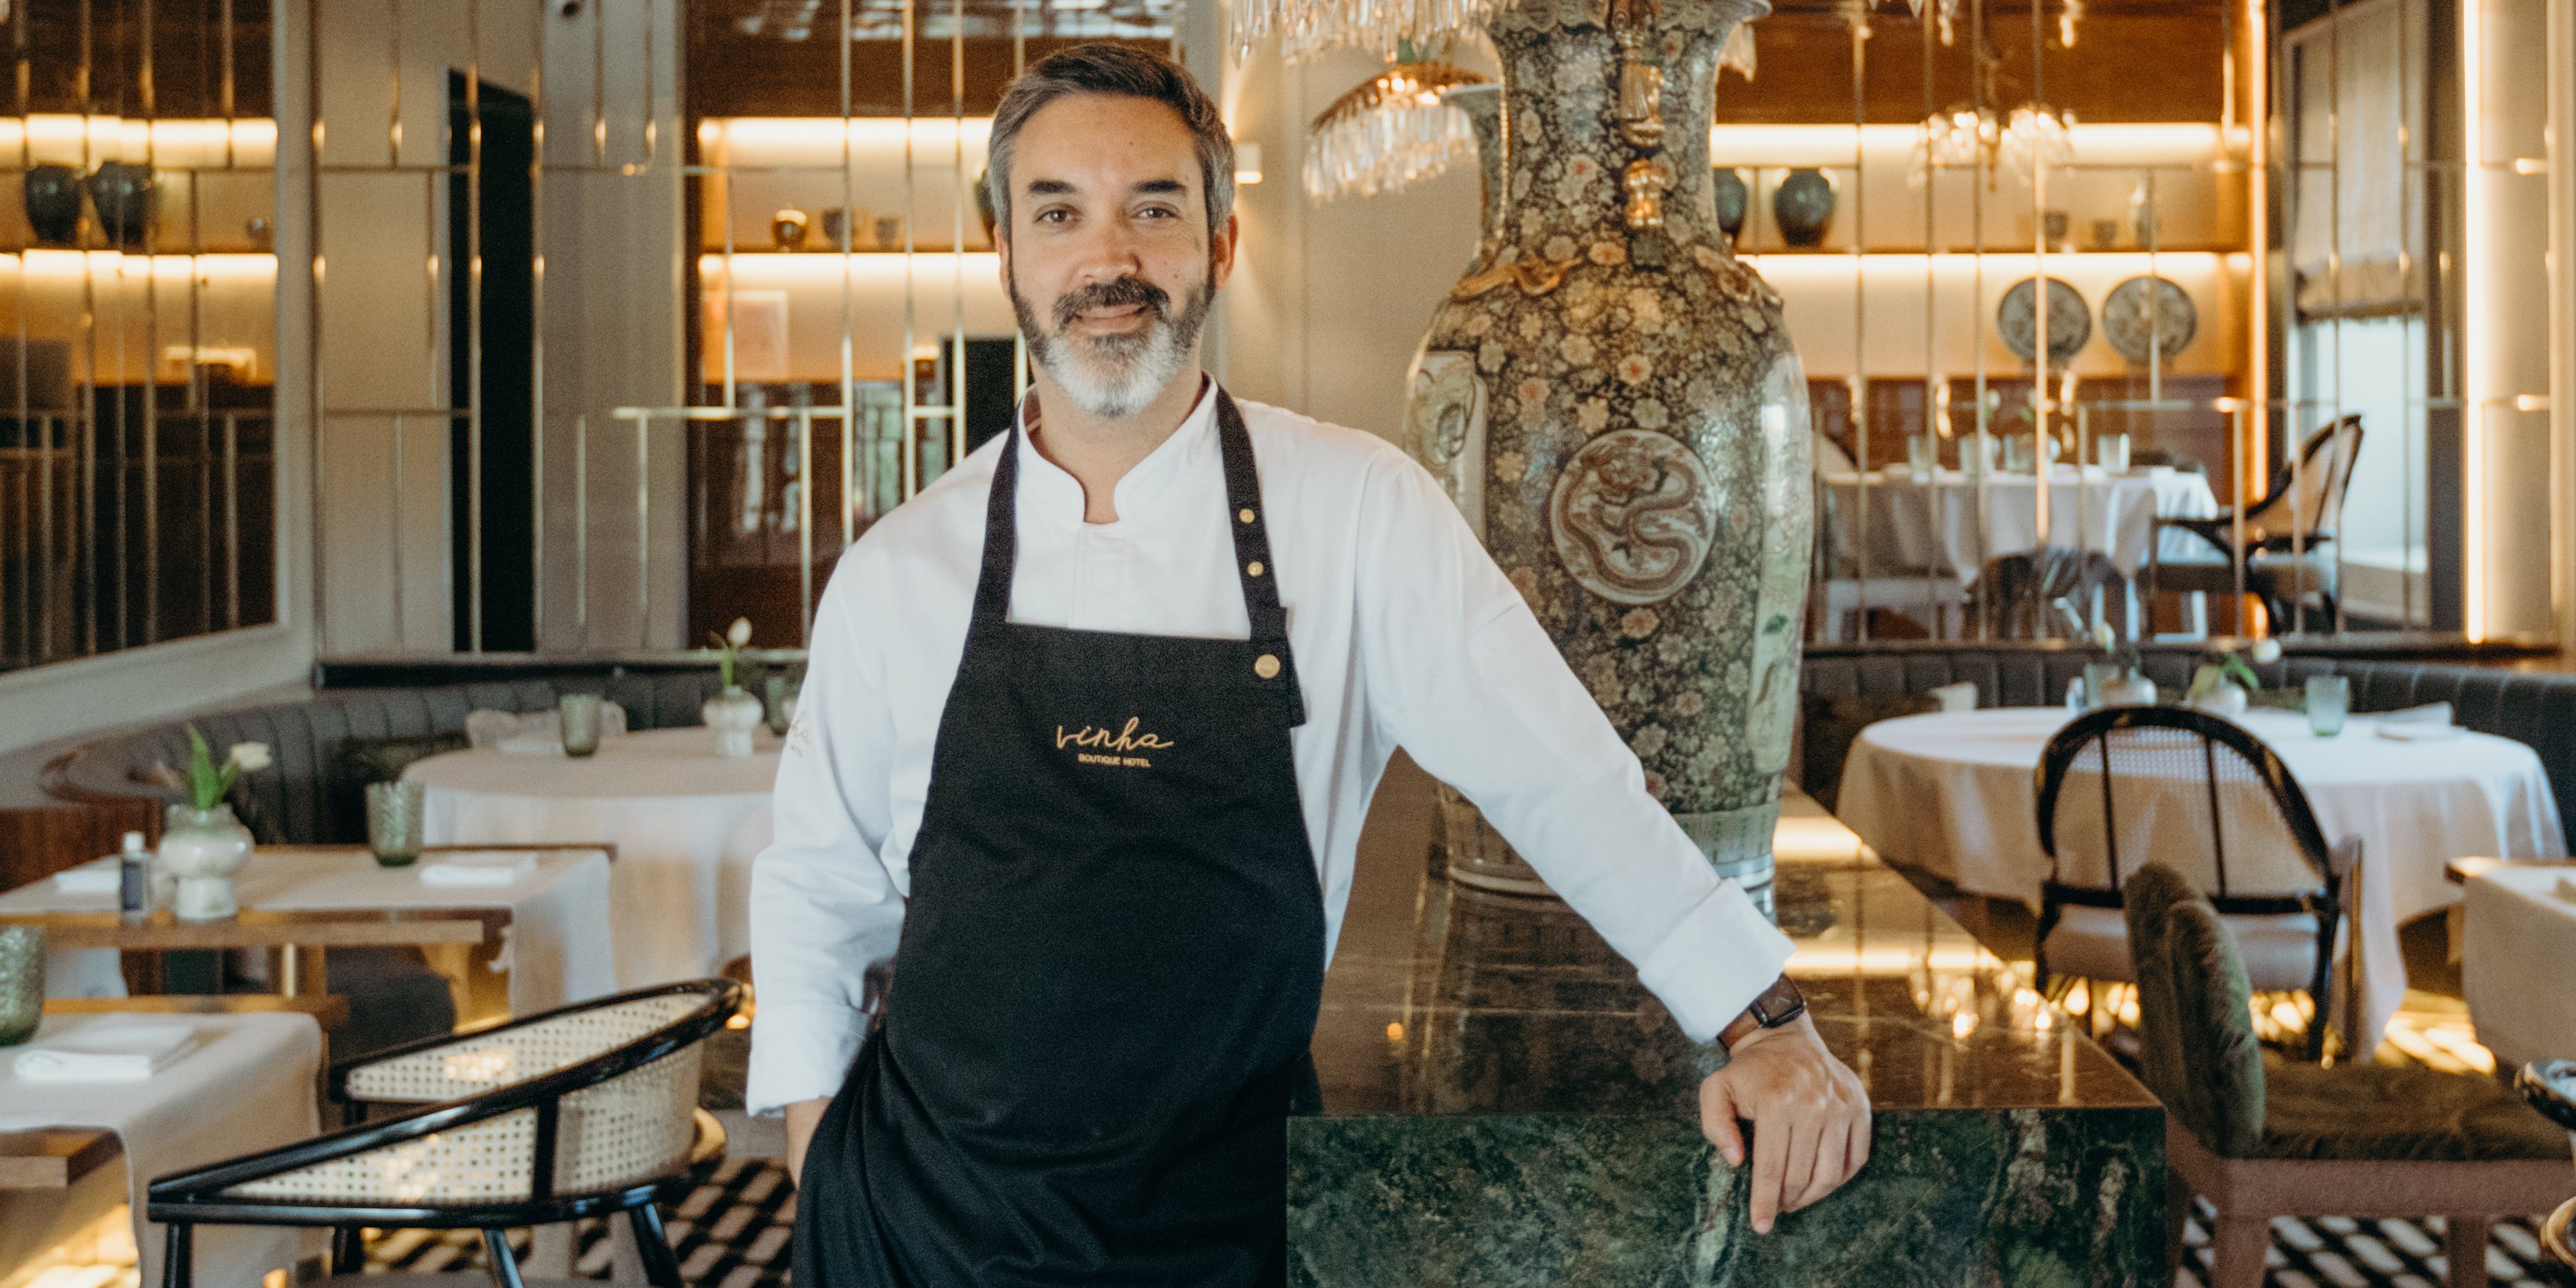 O chef estrelado assina a carta do Vinha Boutique Hotel sendo esta a sua única pegada gastronómica na cidade de Vila Nova de Gaia